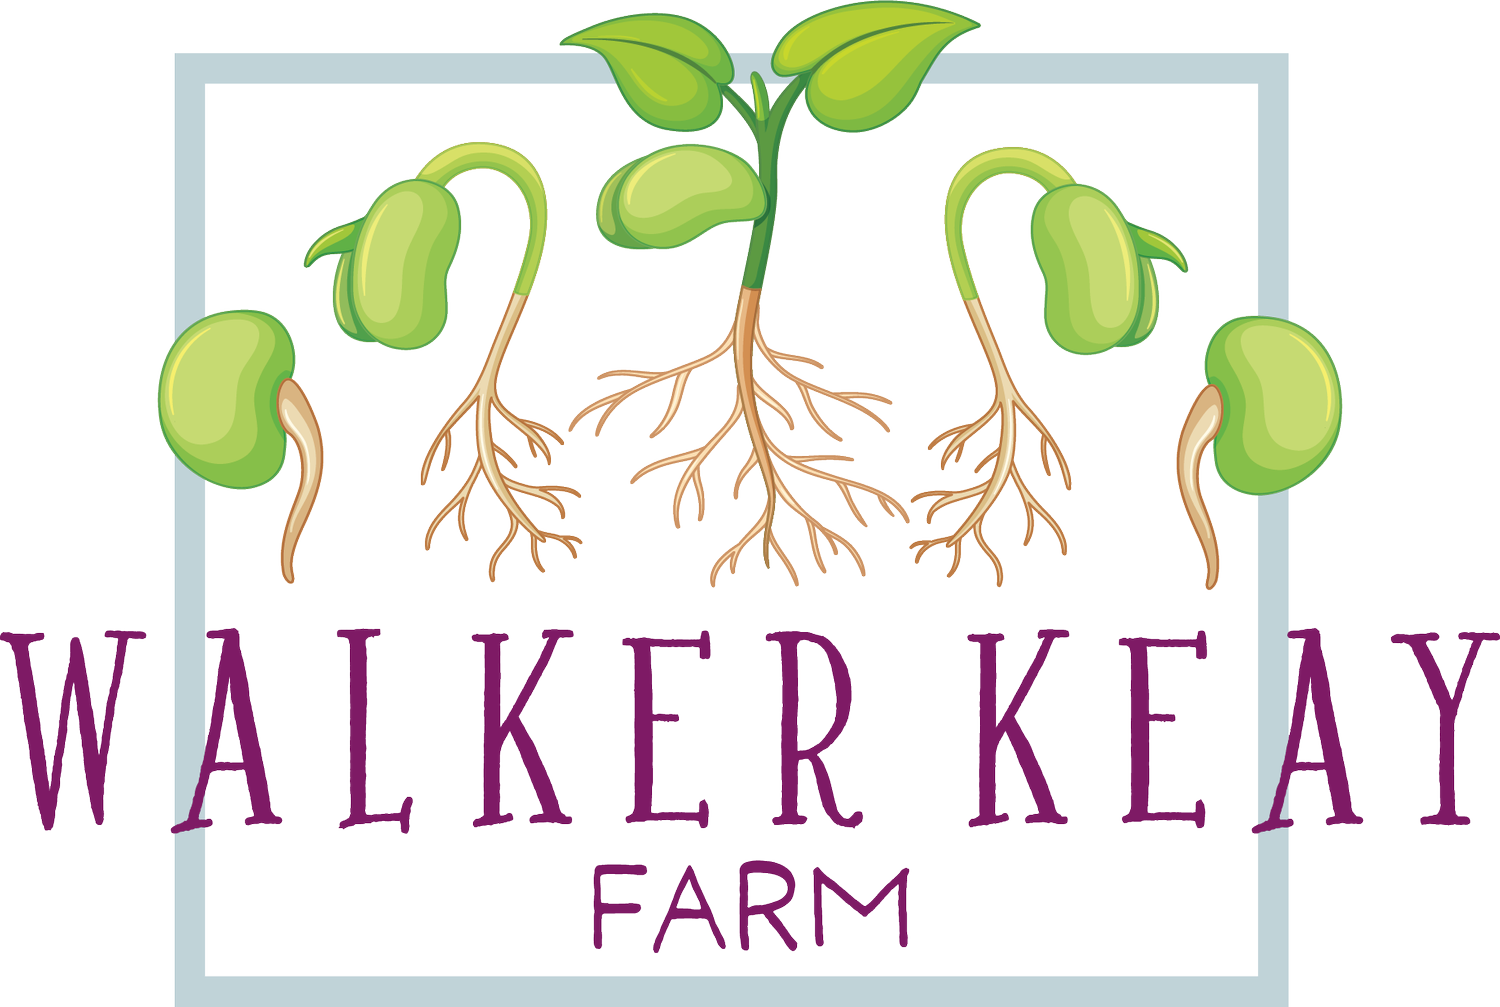 Walker Keay Farm | Eliot, ME